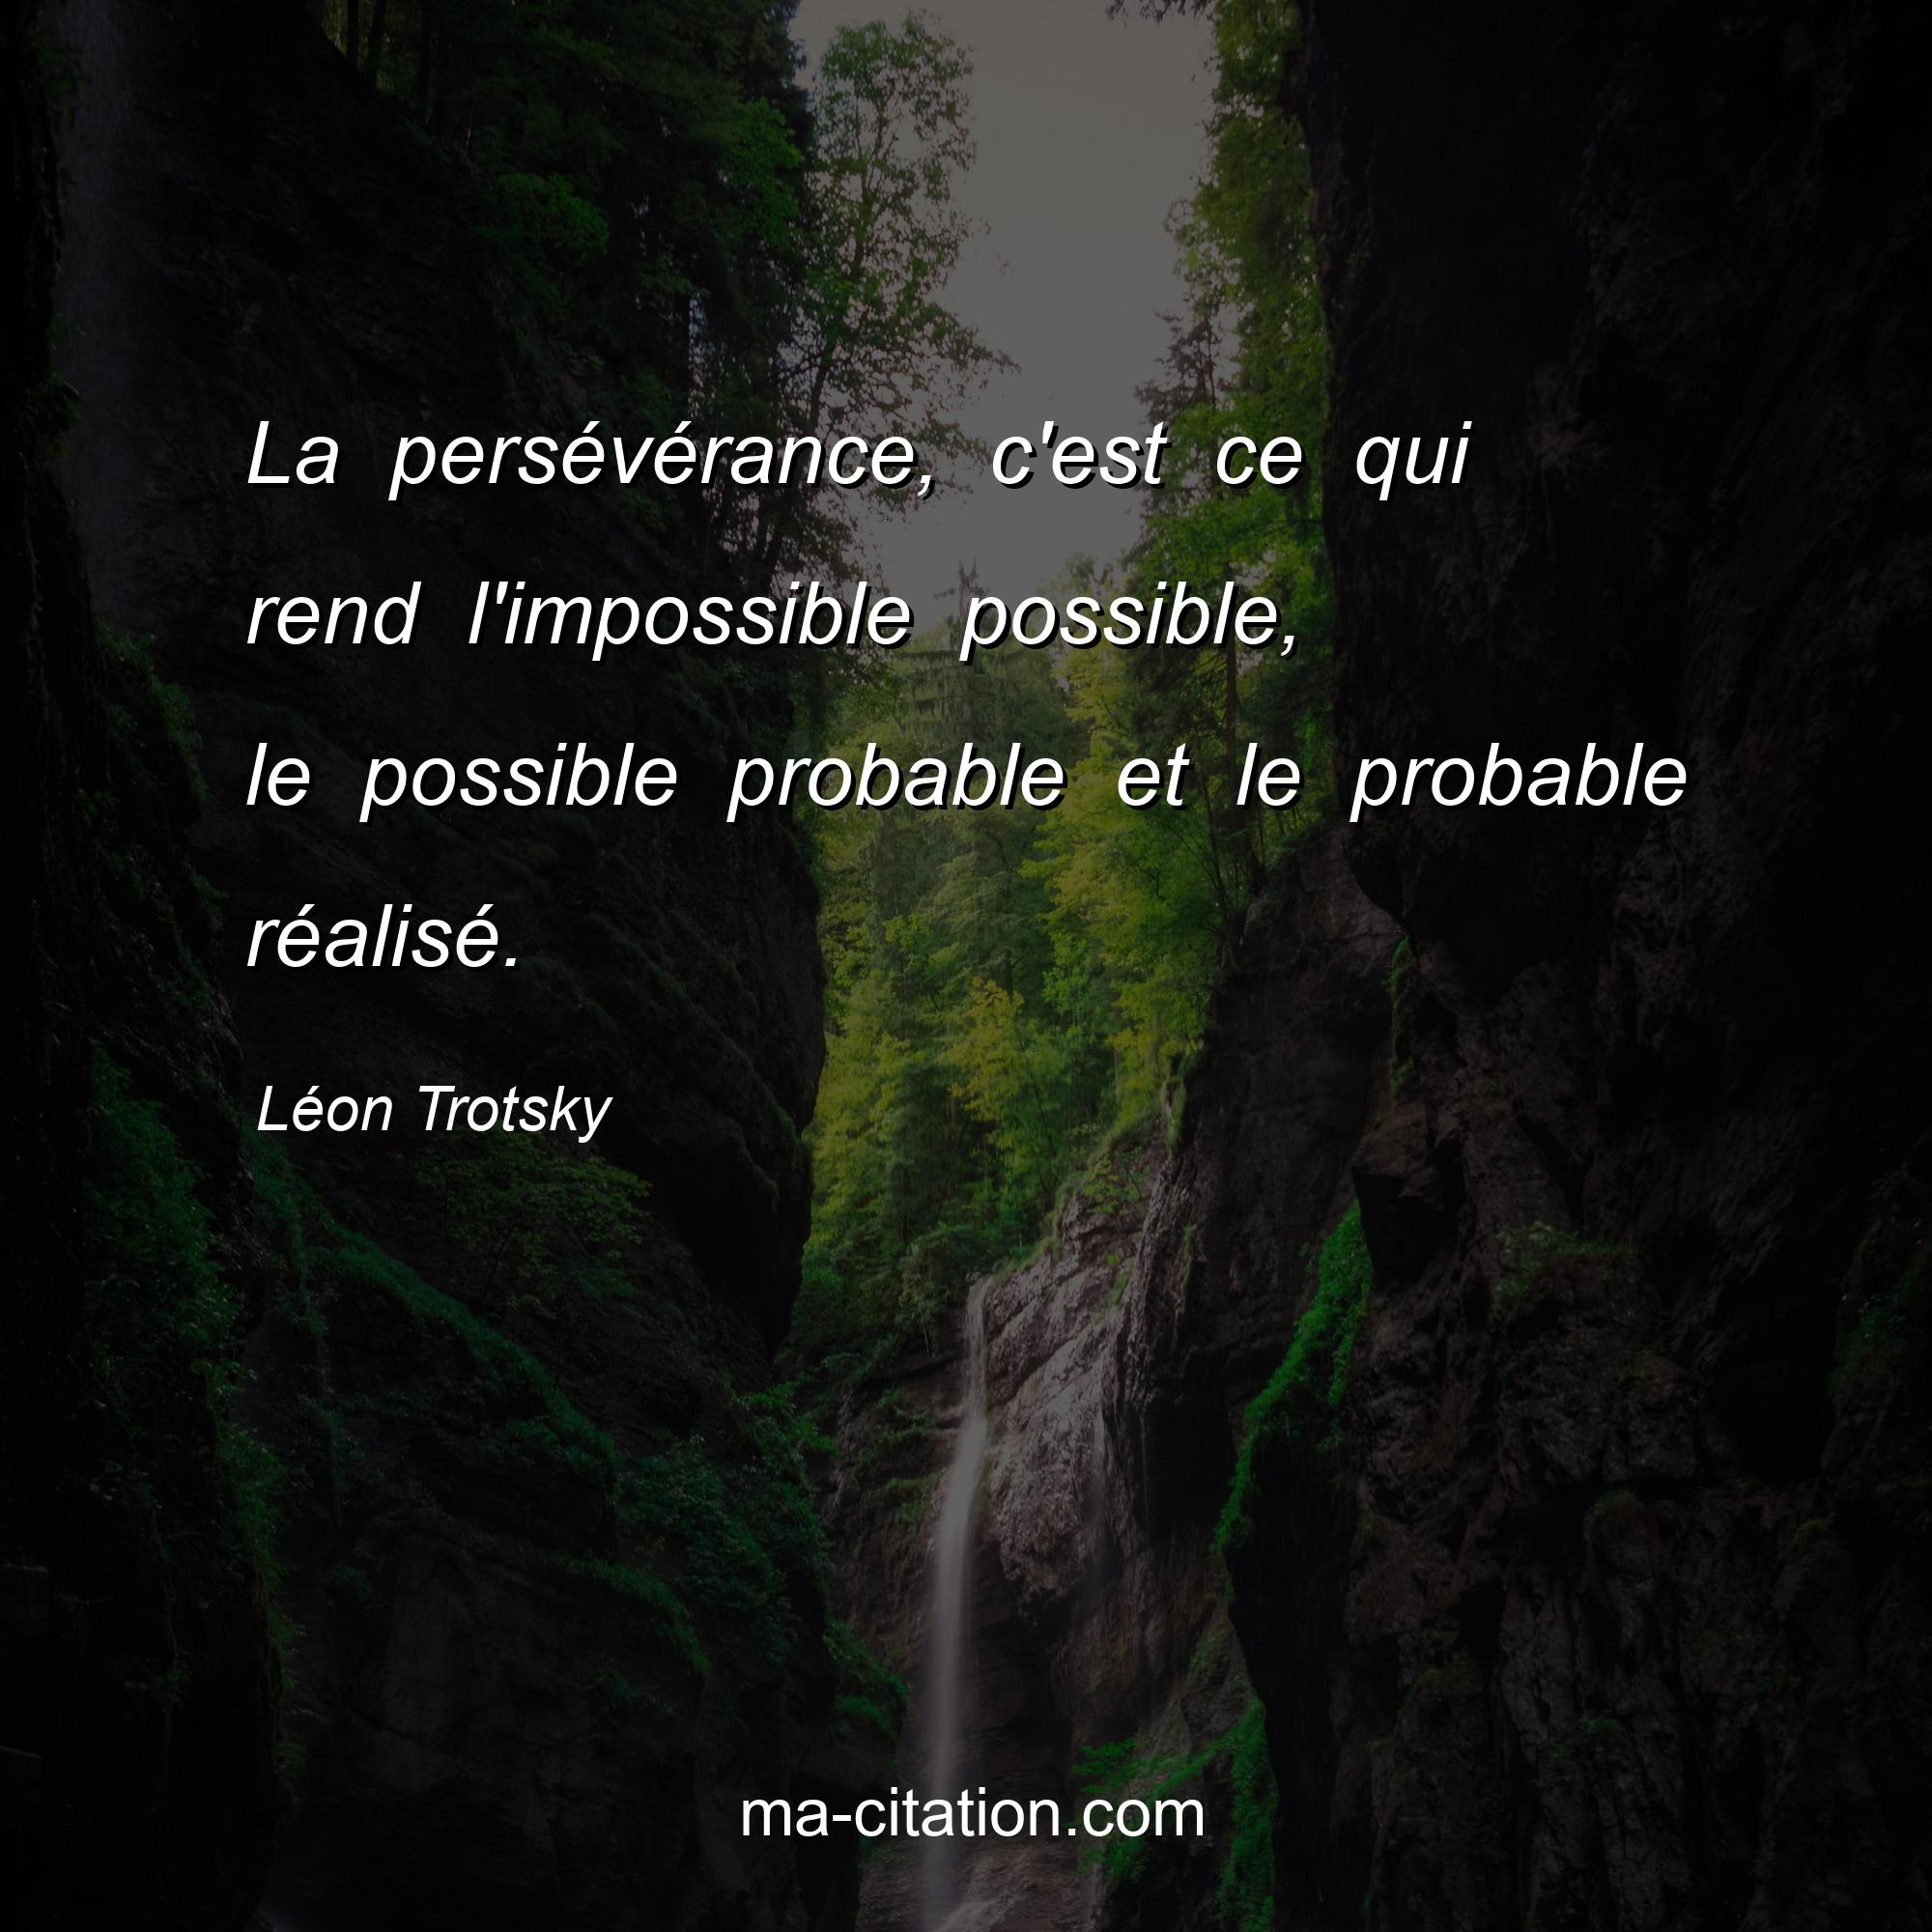 Léon Trotsky : La persévérance, c'est ce qui rend l'impossible possible, le possible probable et le probable réalisé.